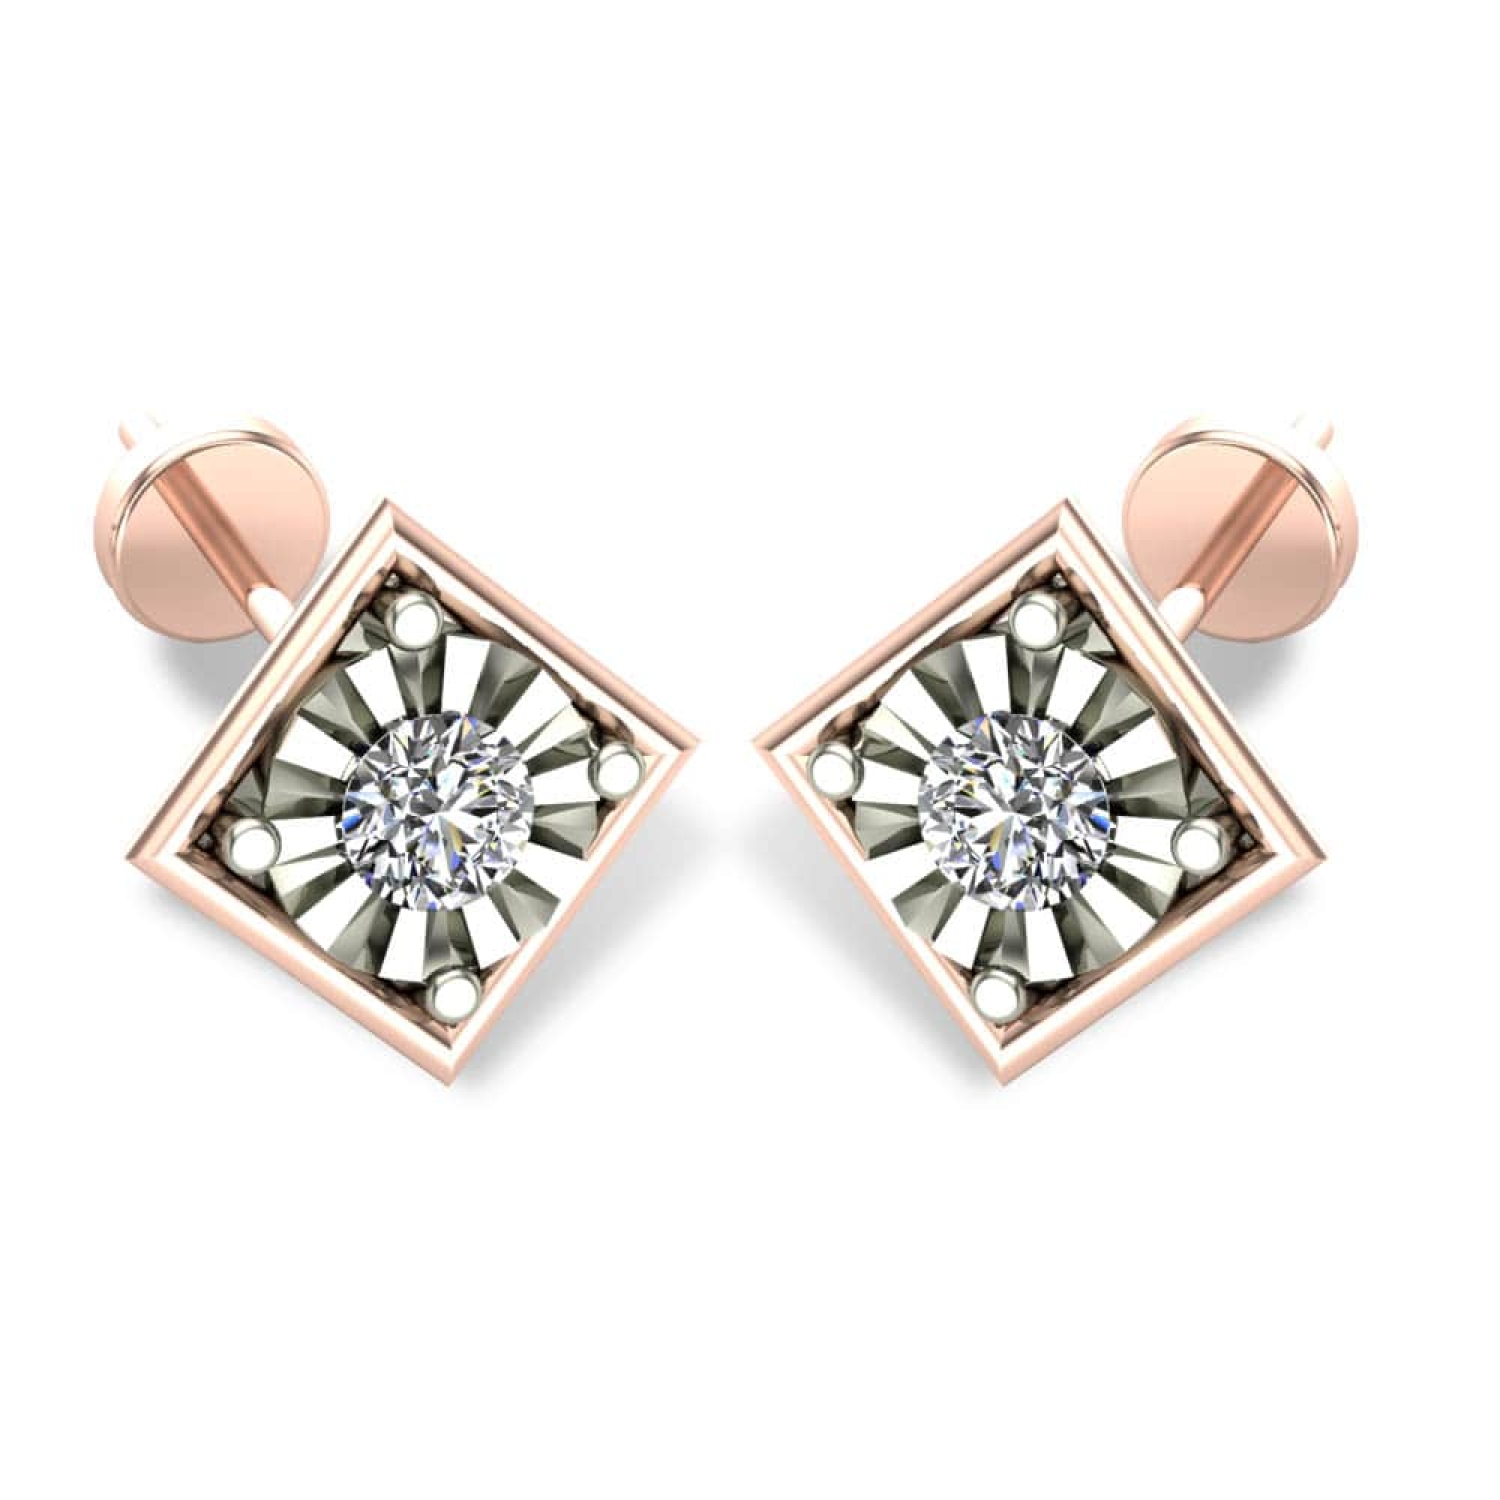 18k Rose Gold Bezel Set Diamond Earrings 1184  Seattle Bellevue  Joseph  Jewelry